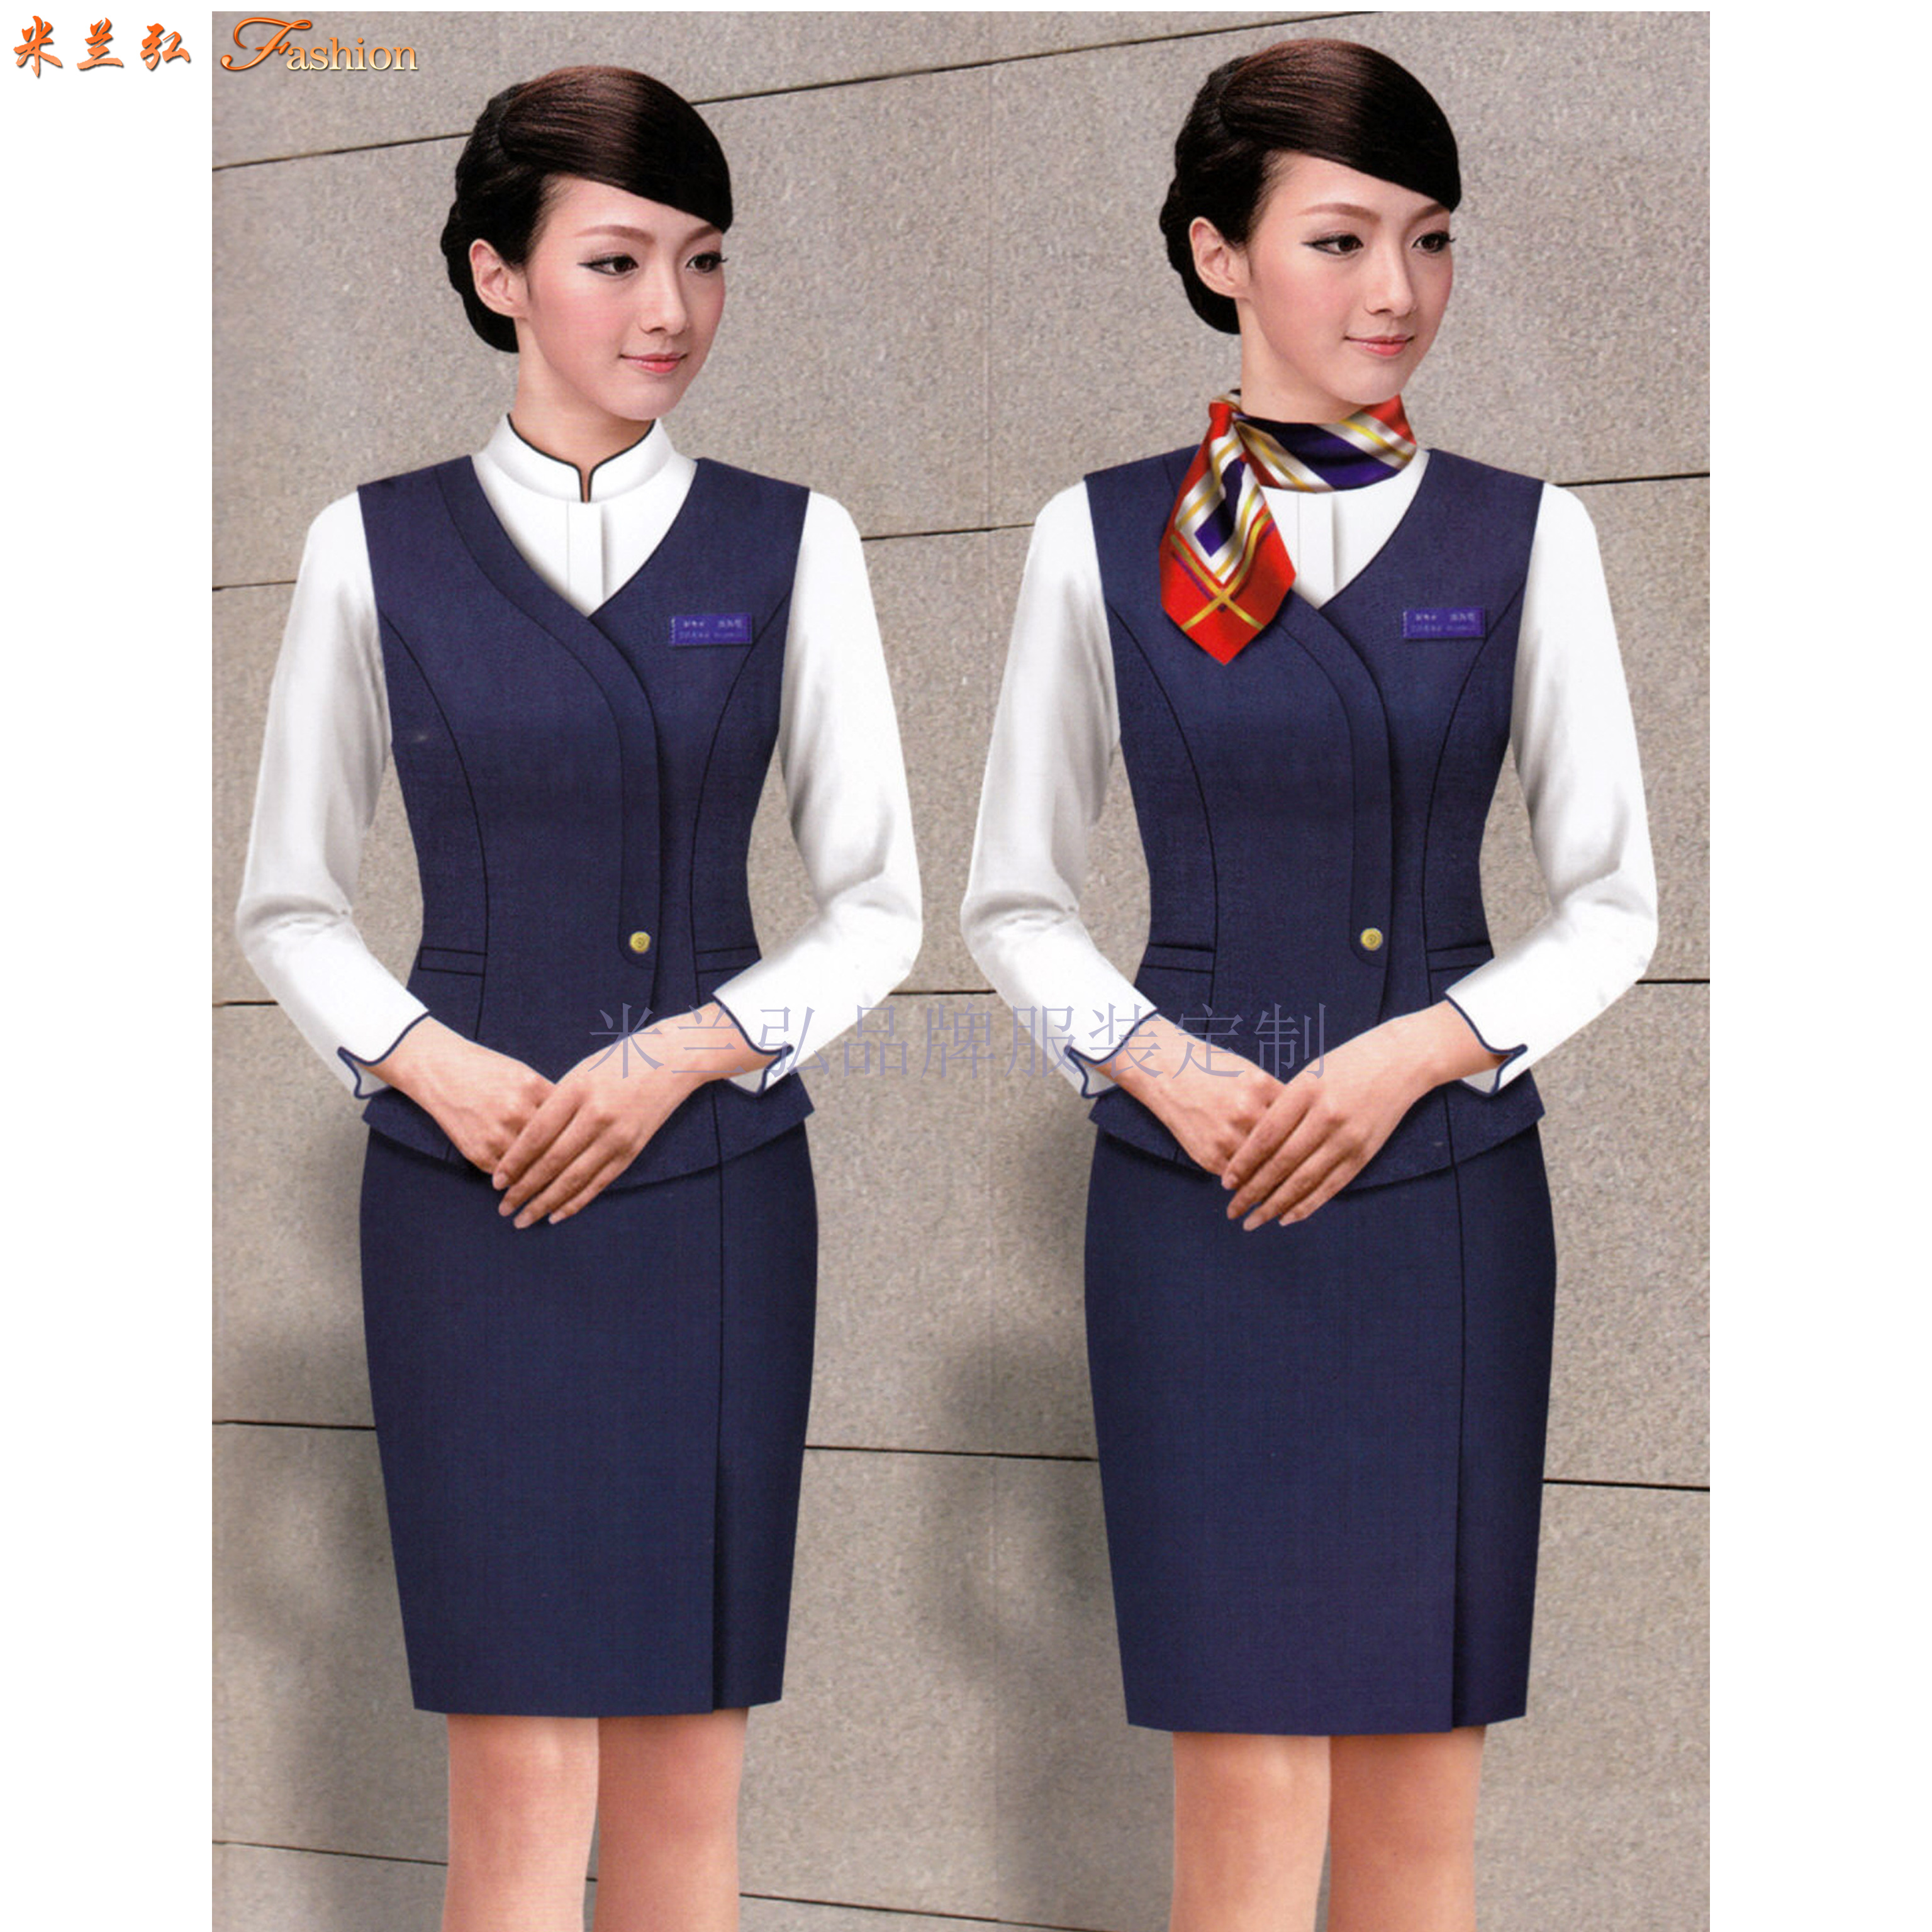 機場工作服-北京大興國際機場地勤VIP、客服職業裝量身定做-2